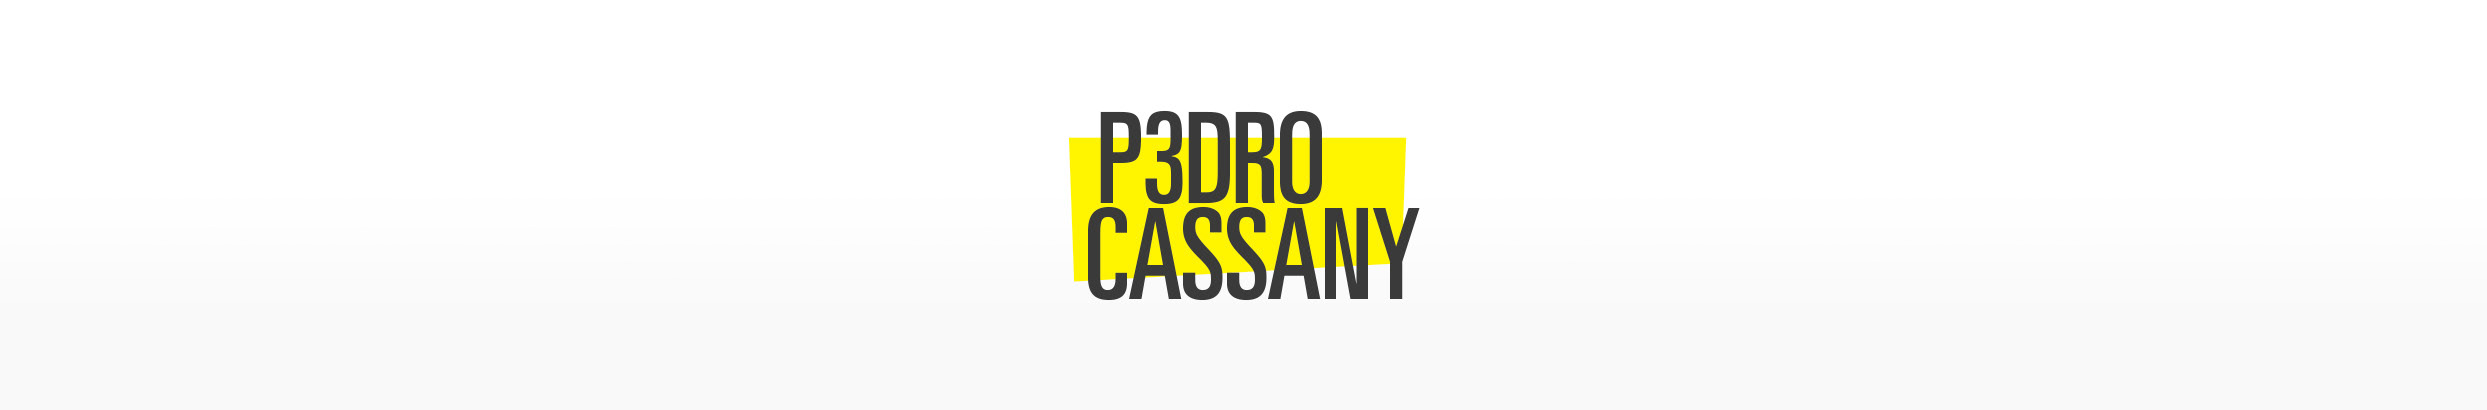 Pedro Cassany profil başlığı